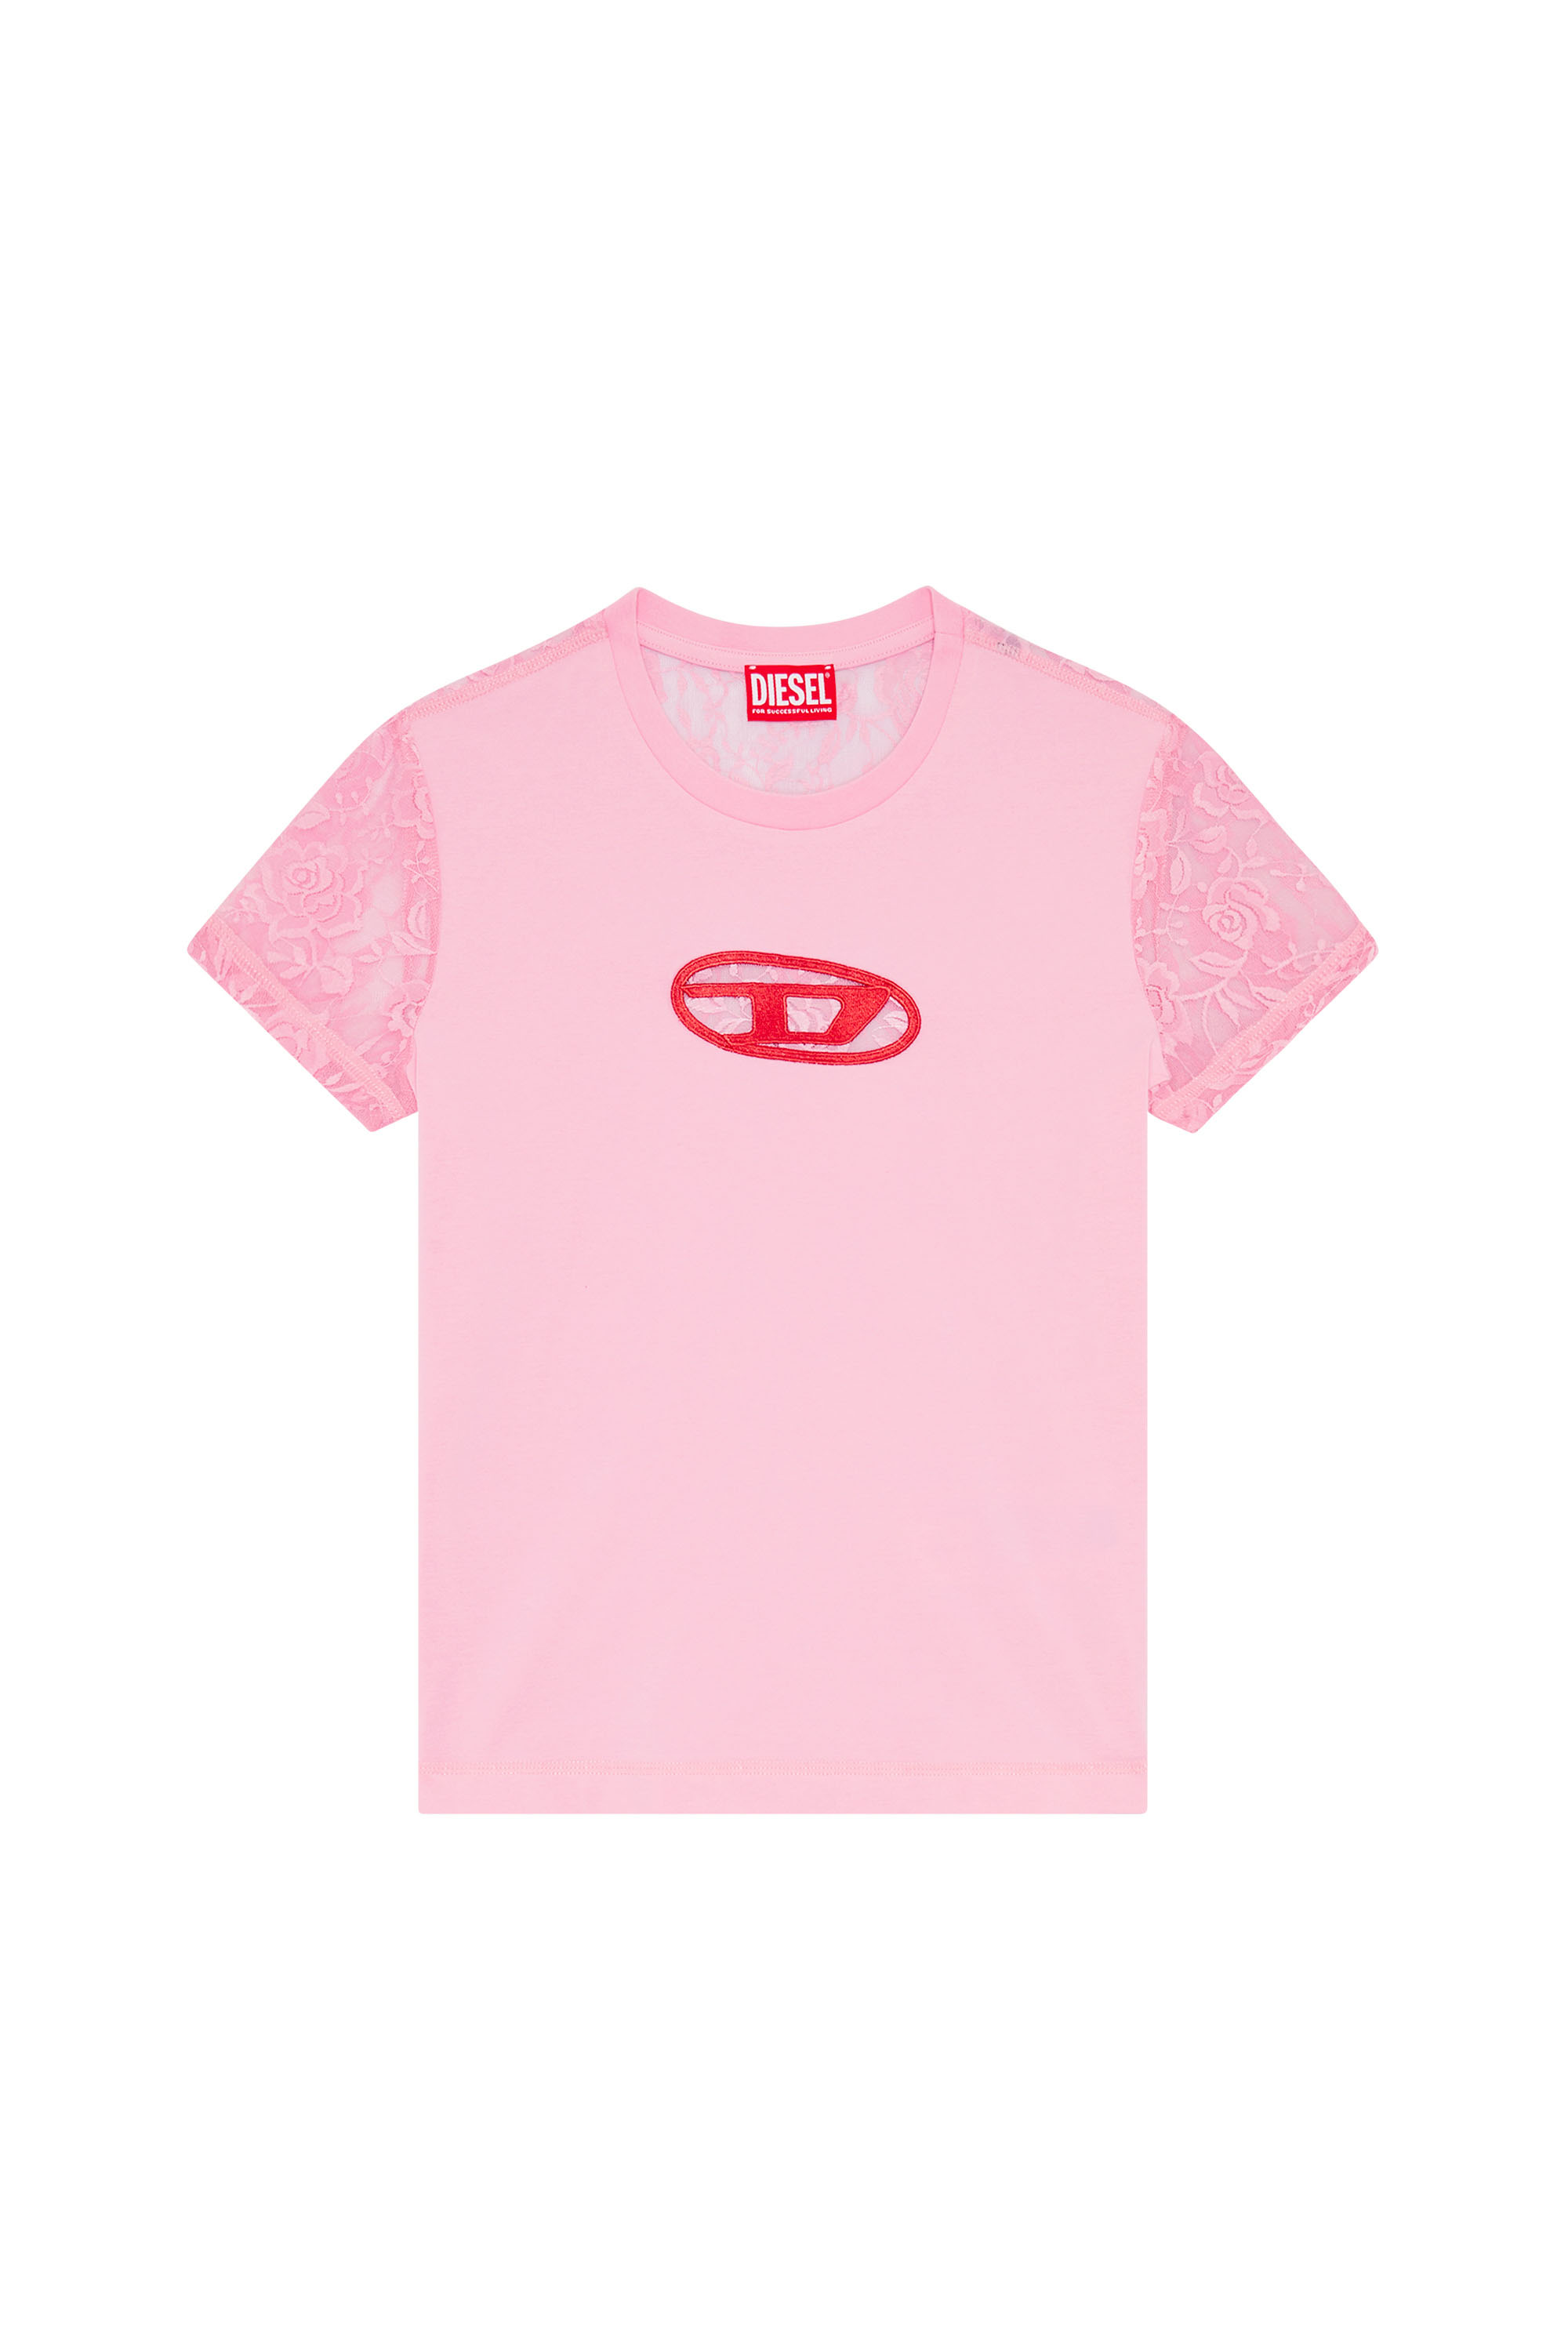 Diesel - T-SLI-OVALACE, Female 半袖TシャツトップスレースDロゴ in ピンク - Image 3